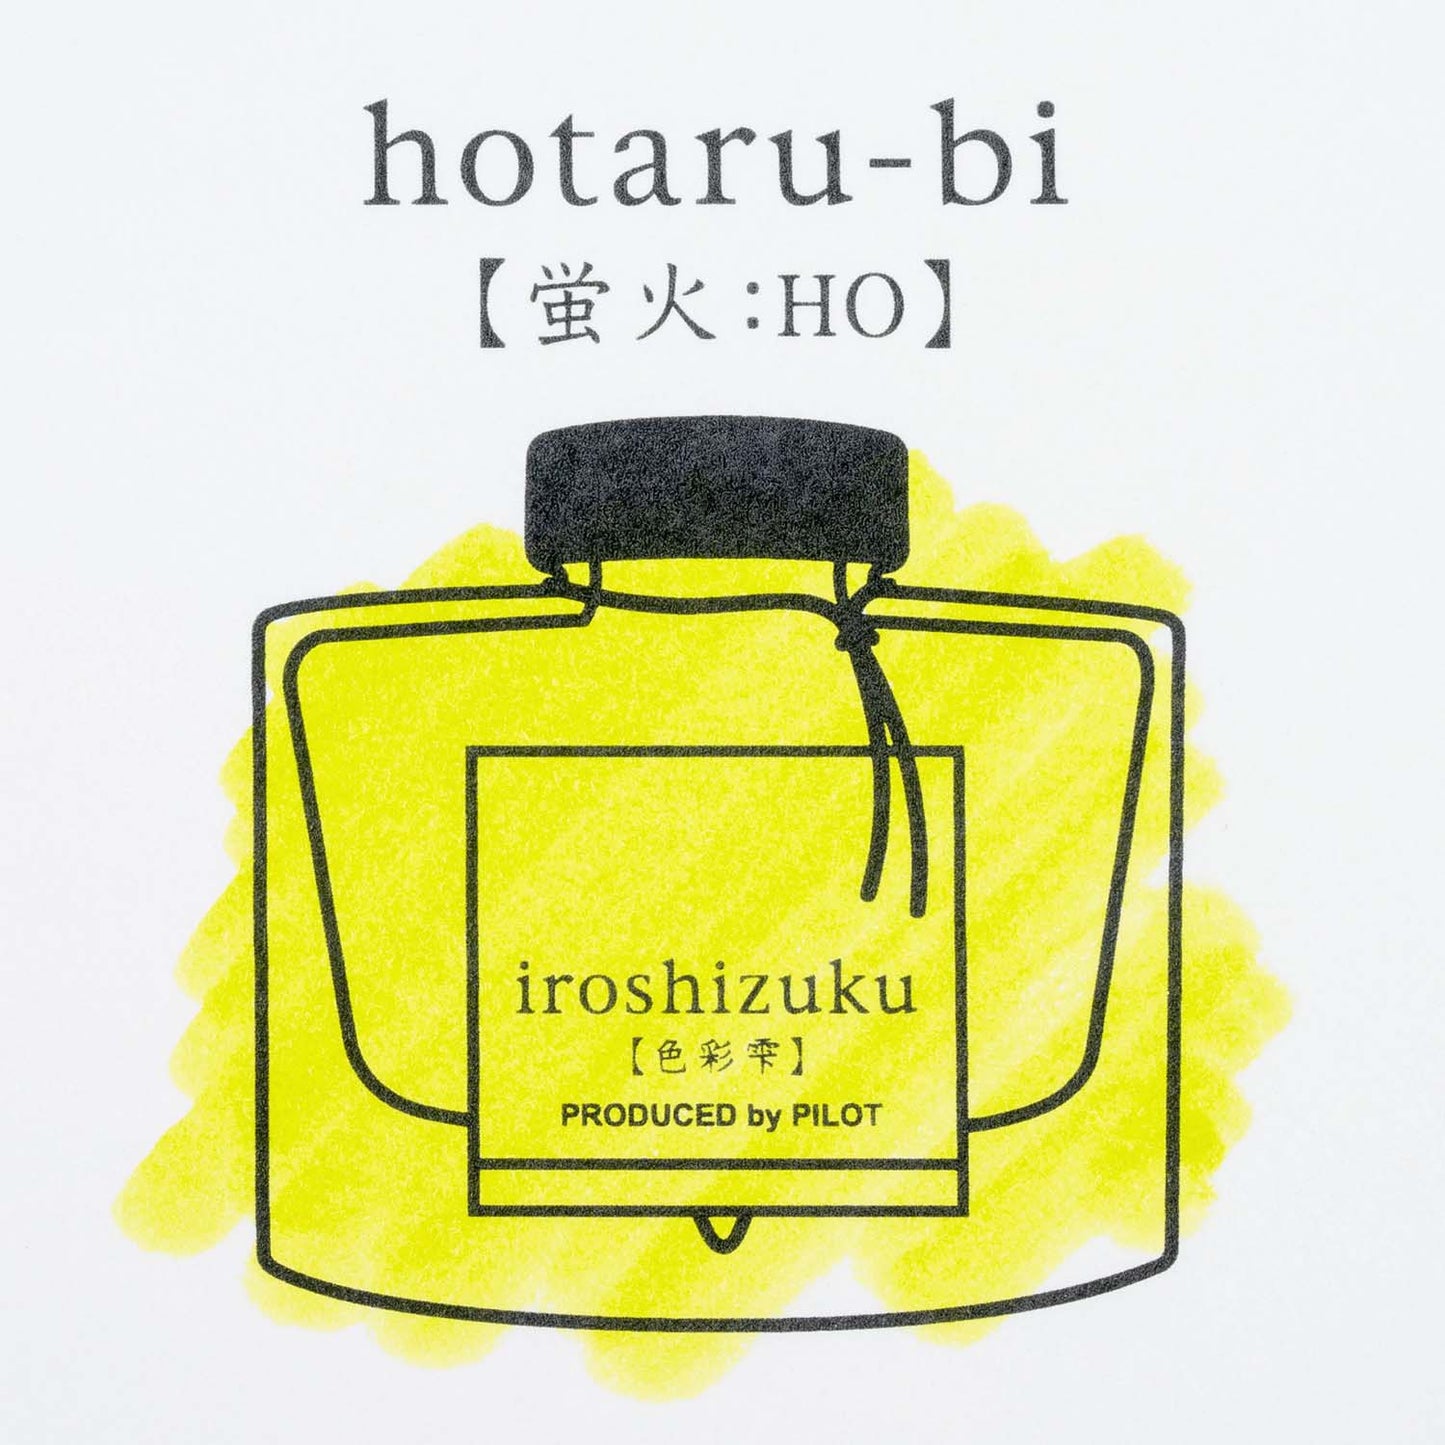 Pilot Iroshizuku Fountain Pen Ink - Hotaru-Bi (Light of Fireflies)- 50 ml Bottle sample green yellow